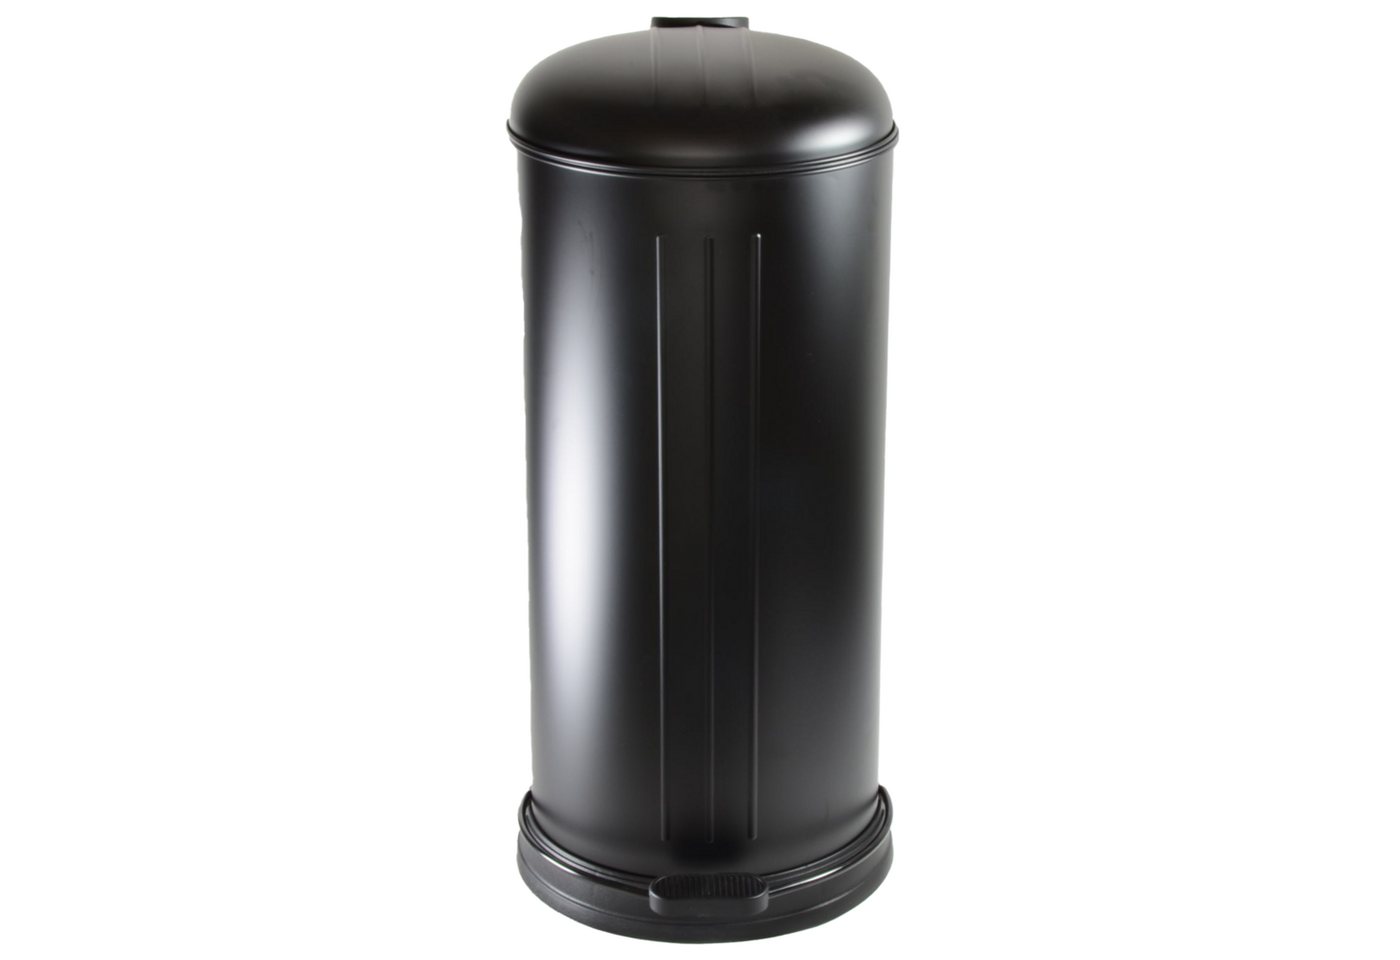 B&S Mülleimer 30 Liter Abfalleimer Treteimer Metall schwarz matt mit Absenkautomatik, mit Absenkautomatik von B&S